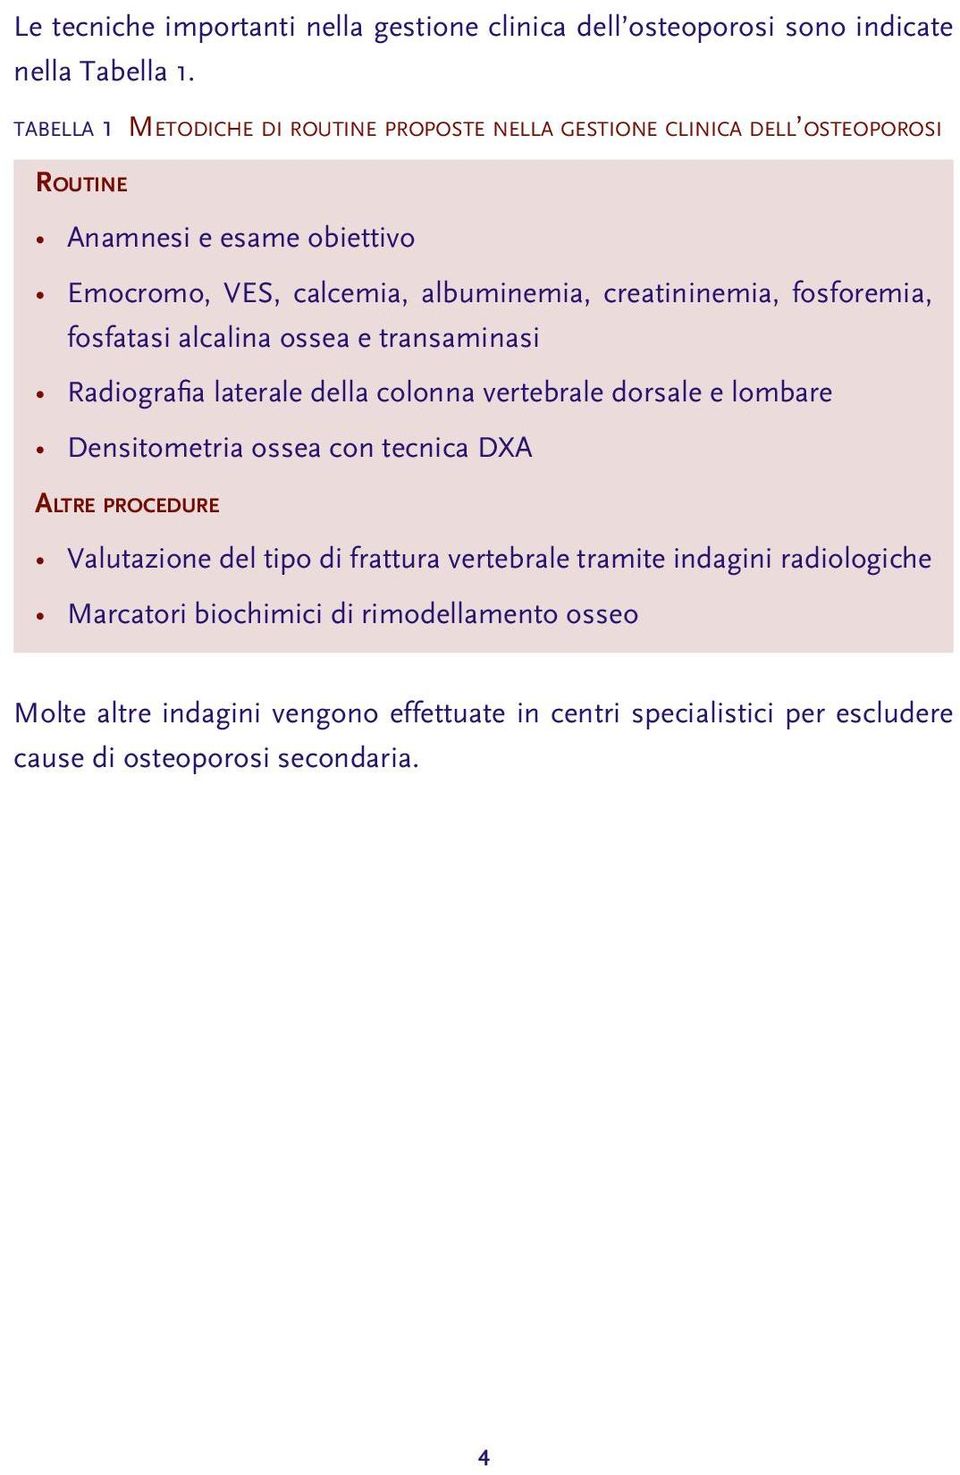 creatininemia, fosforemia, fosfatasi alcalina ossea e transaminasi Radiografia laterale della colonna vertebrale dorsale e lombare Densitometria ossea con tecnica